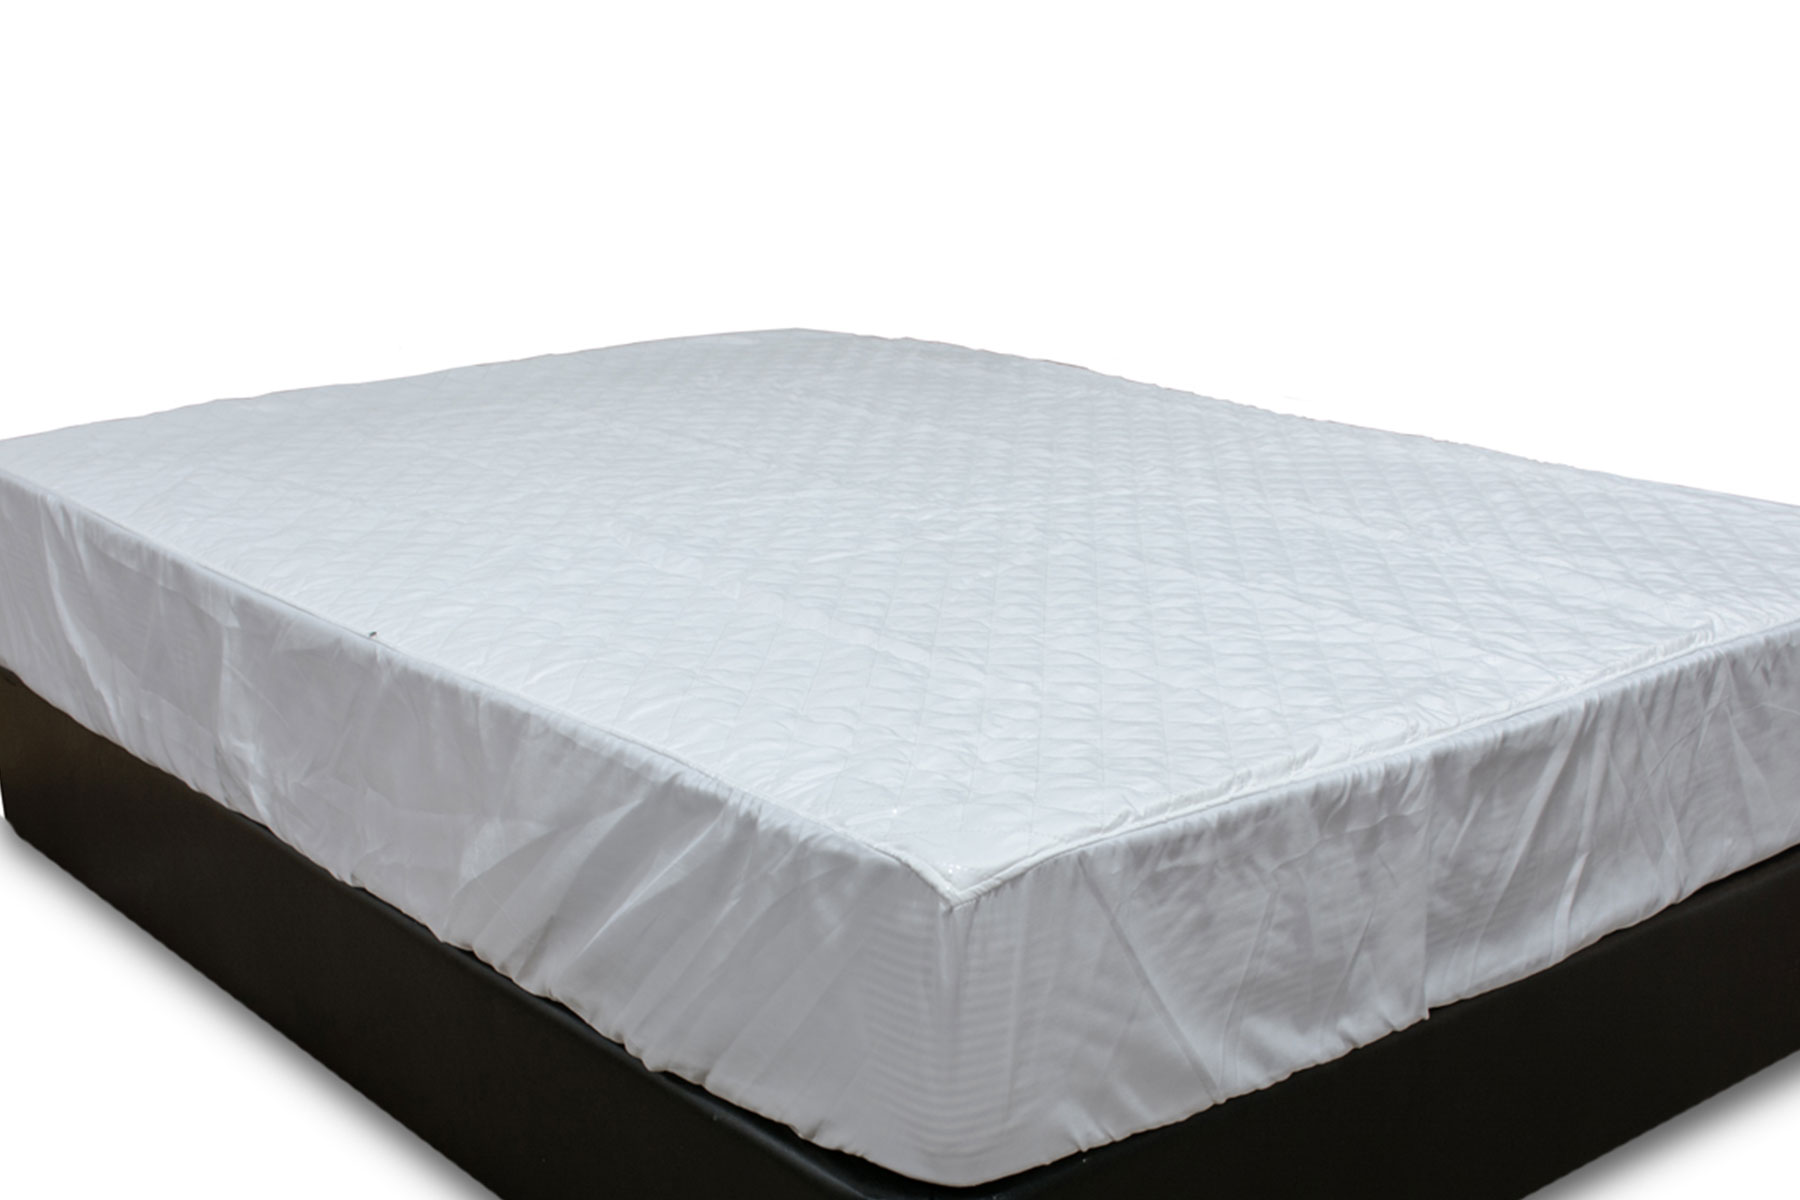 cot death mattress protector